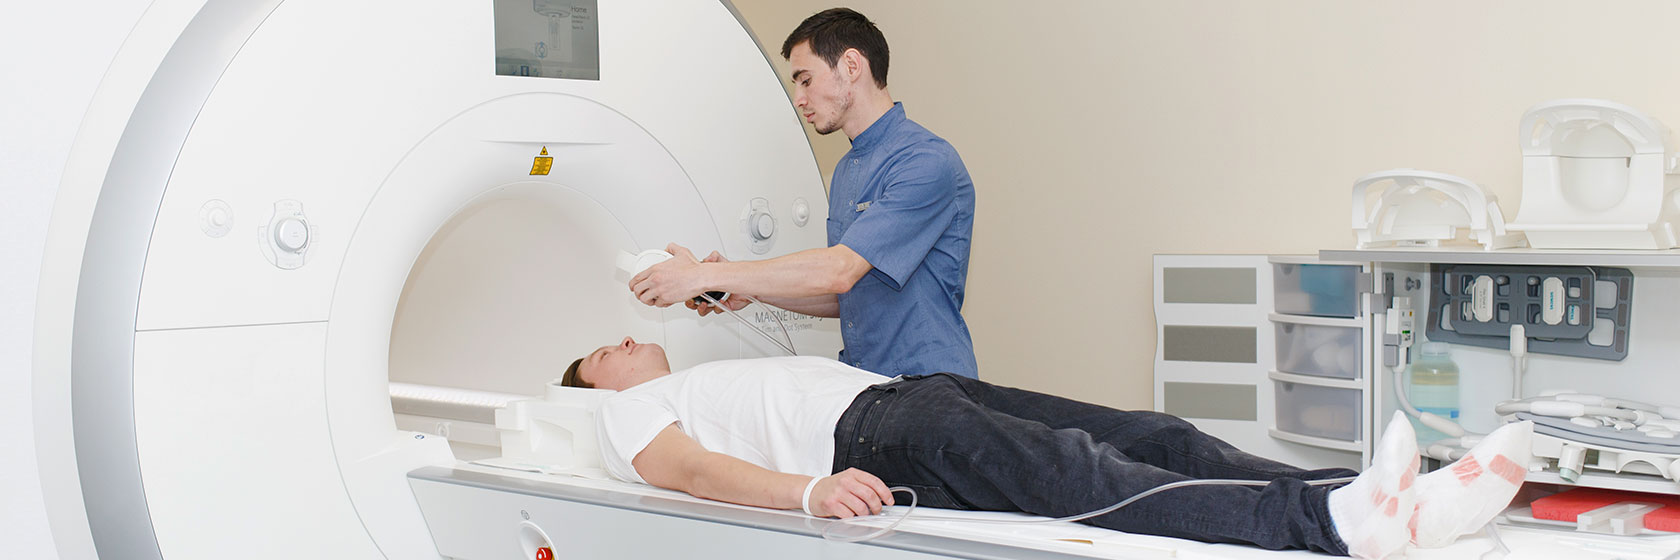 Оператор МИБС проводит МРТ исследование пациента на высокопольном аппарате Skyra3T